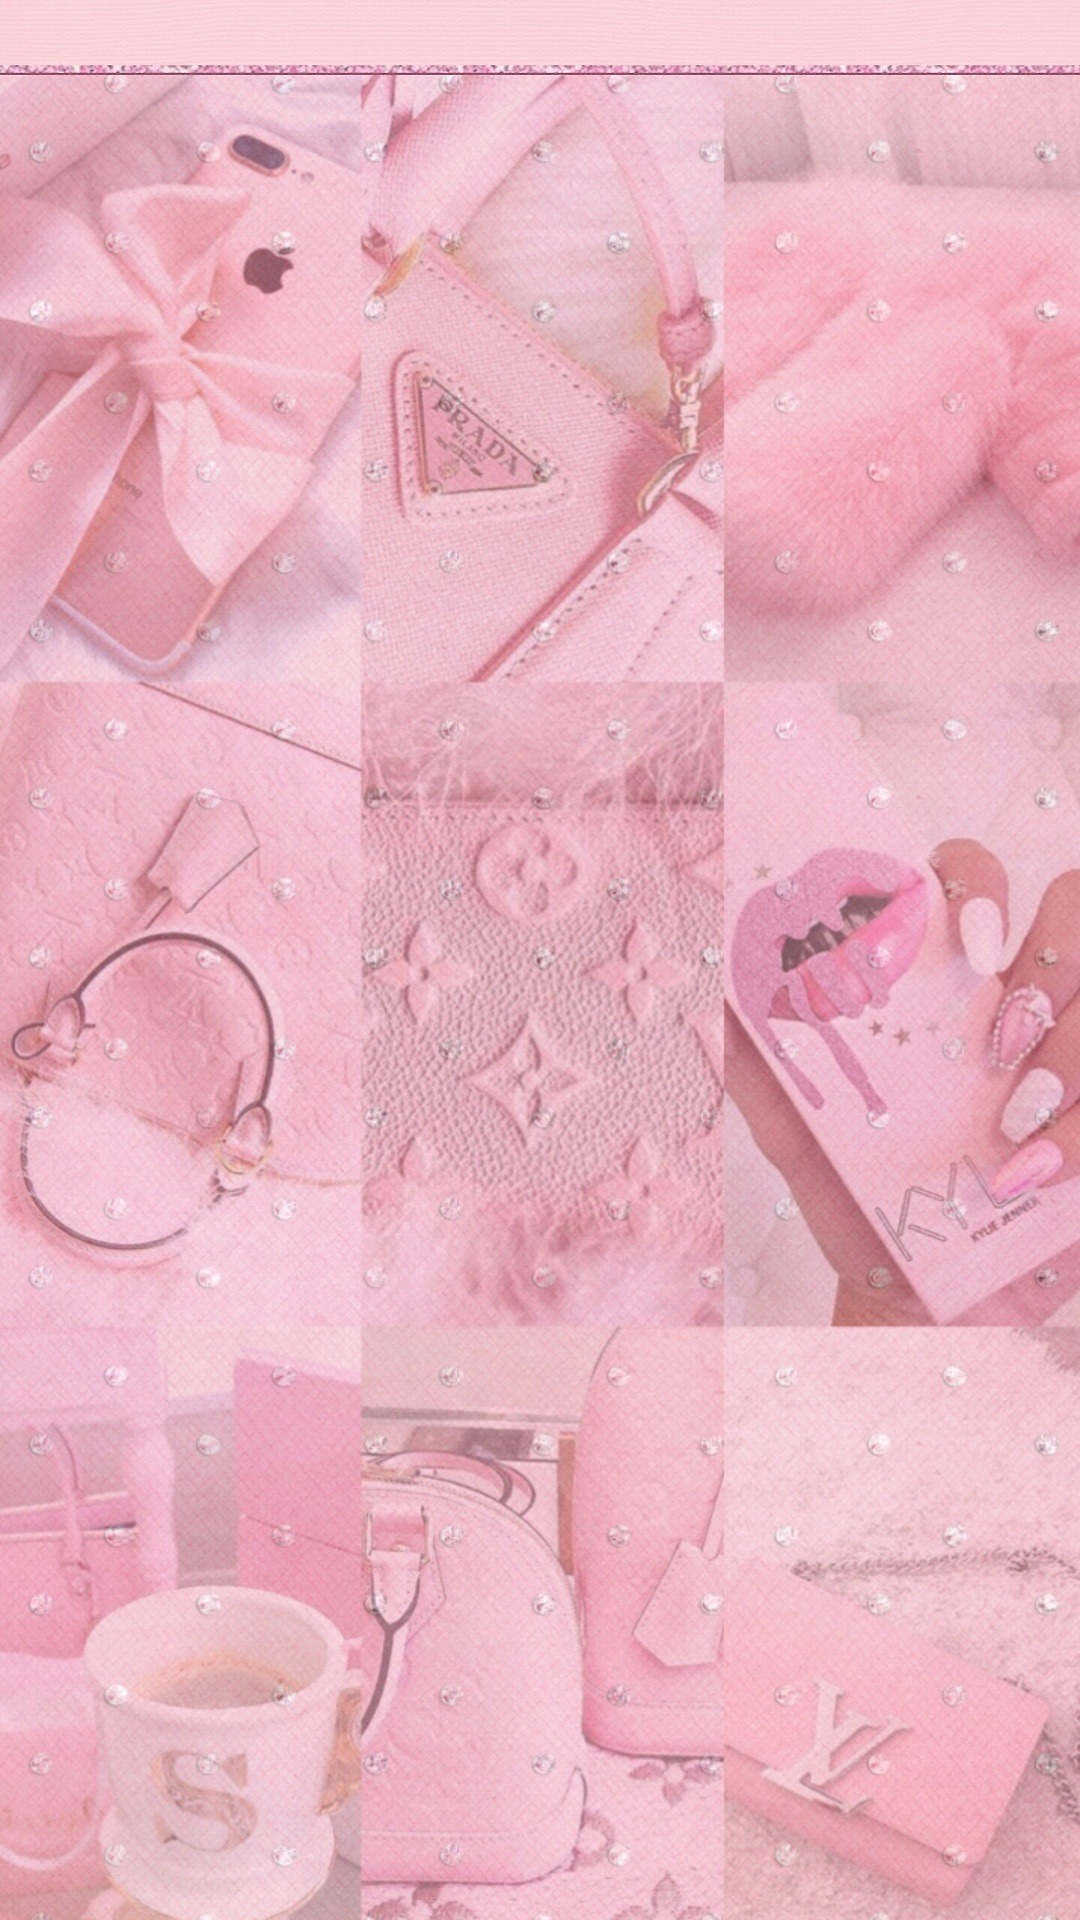 tumblr pink wallpaper